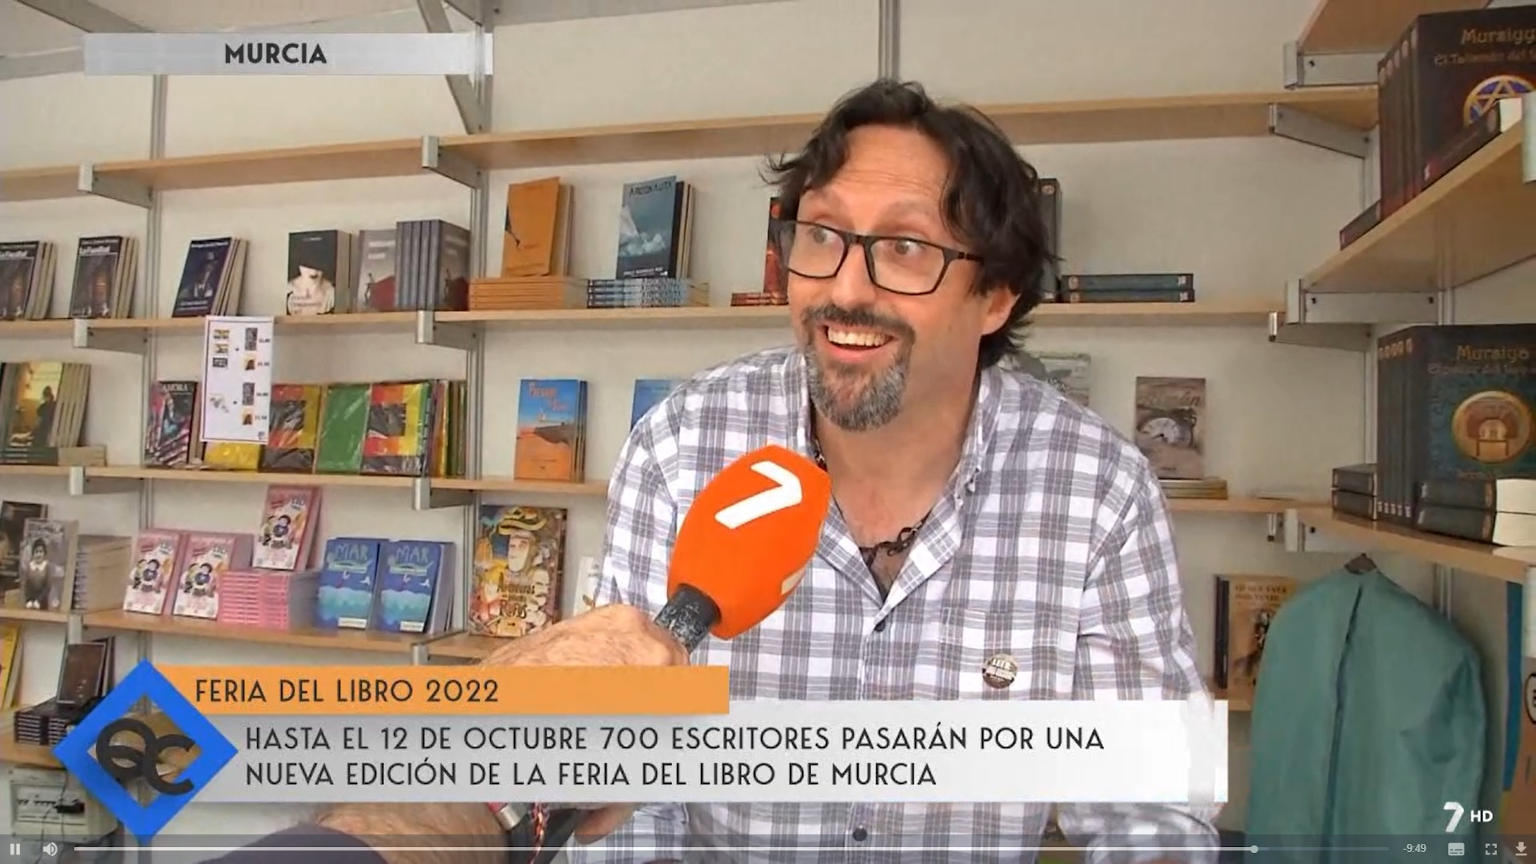 Sergio Reyes en 7TV Región de Murcia, hablando de "Mursiya. El pintor del Rey Lobo" en la Feria del libro de Murcia 2022 Quédate Conmigo 7 de octubre de 2022, dossier de prensa 2022